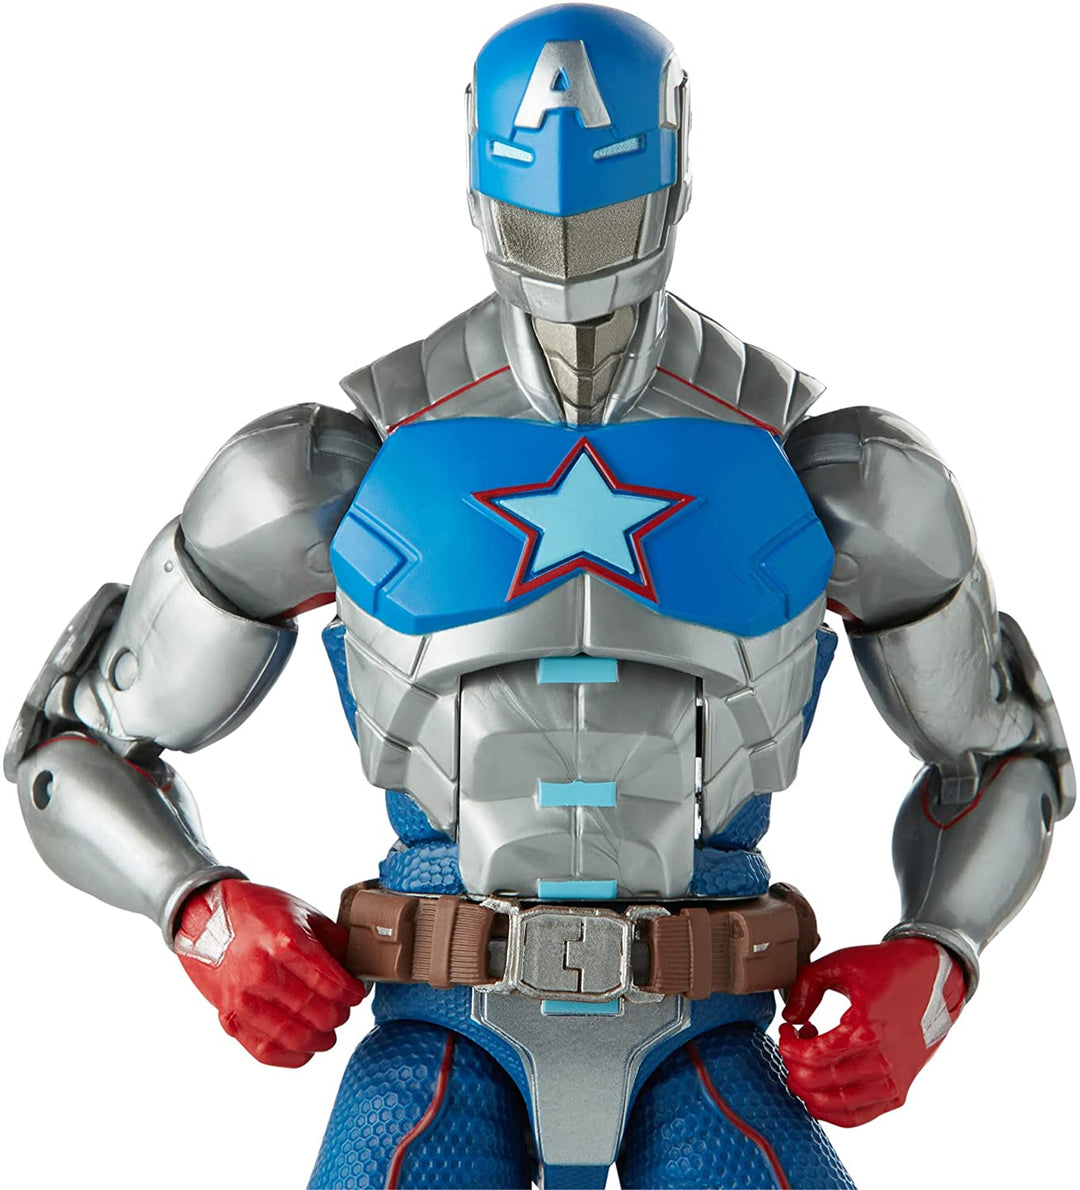 Hasbro Marvel Legends Series 15 cm große Civil Warrior Actionfigur zum Sammeln, Spielzeug für Kinder ab 4 Jahren, mit Schildzubehör F0250